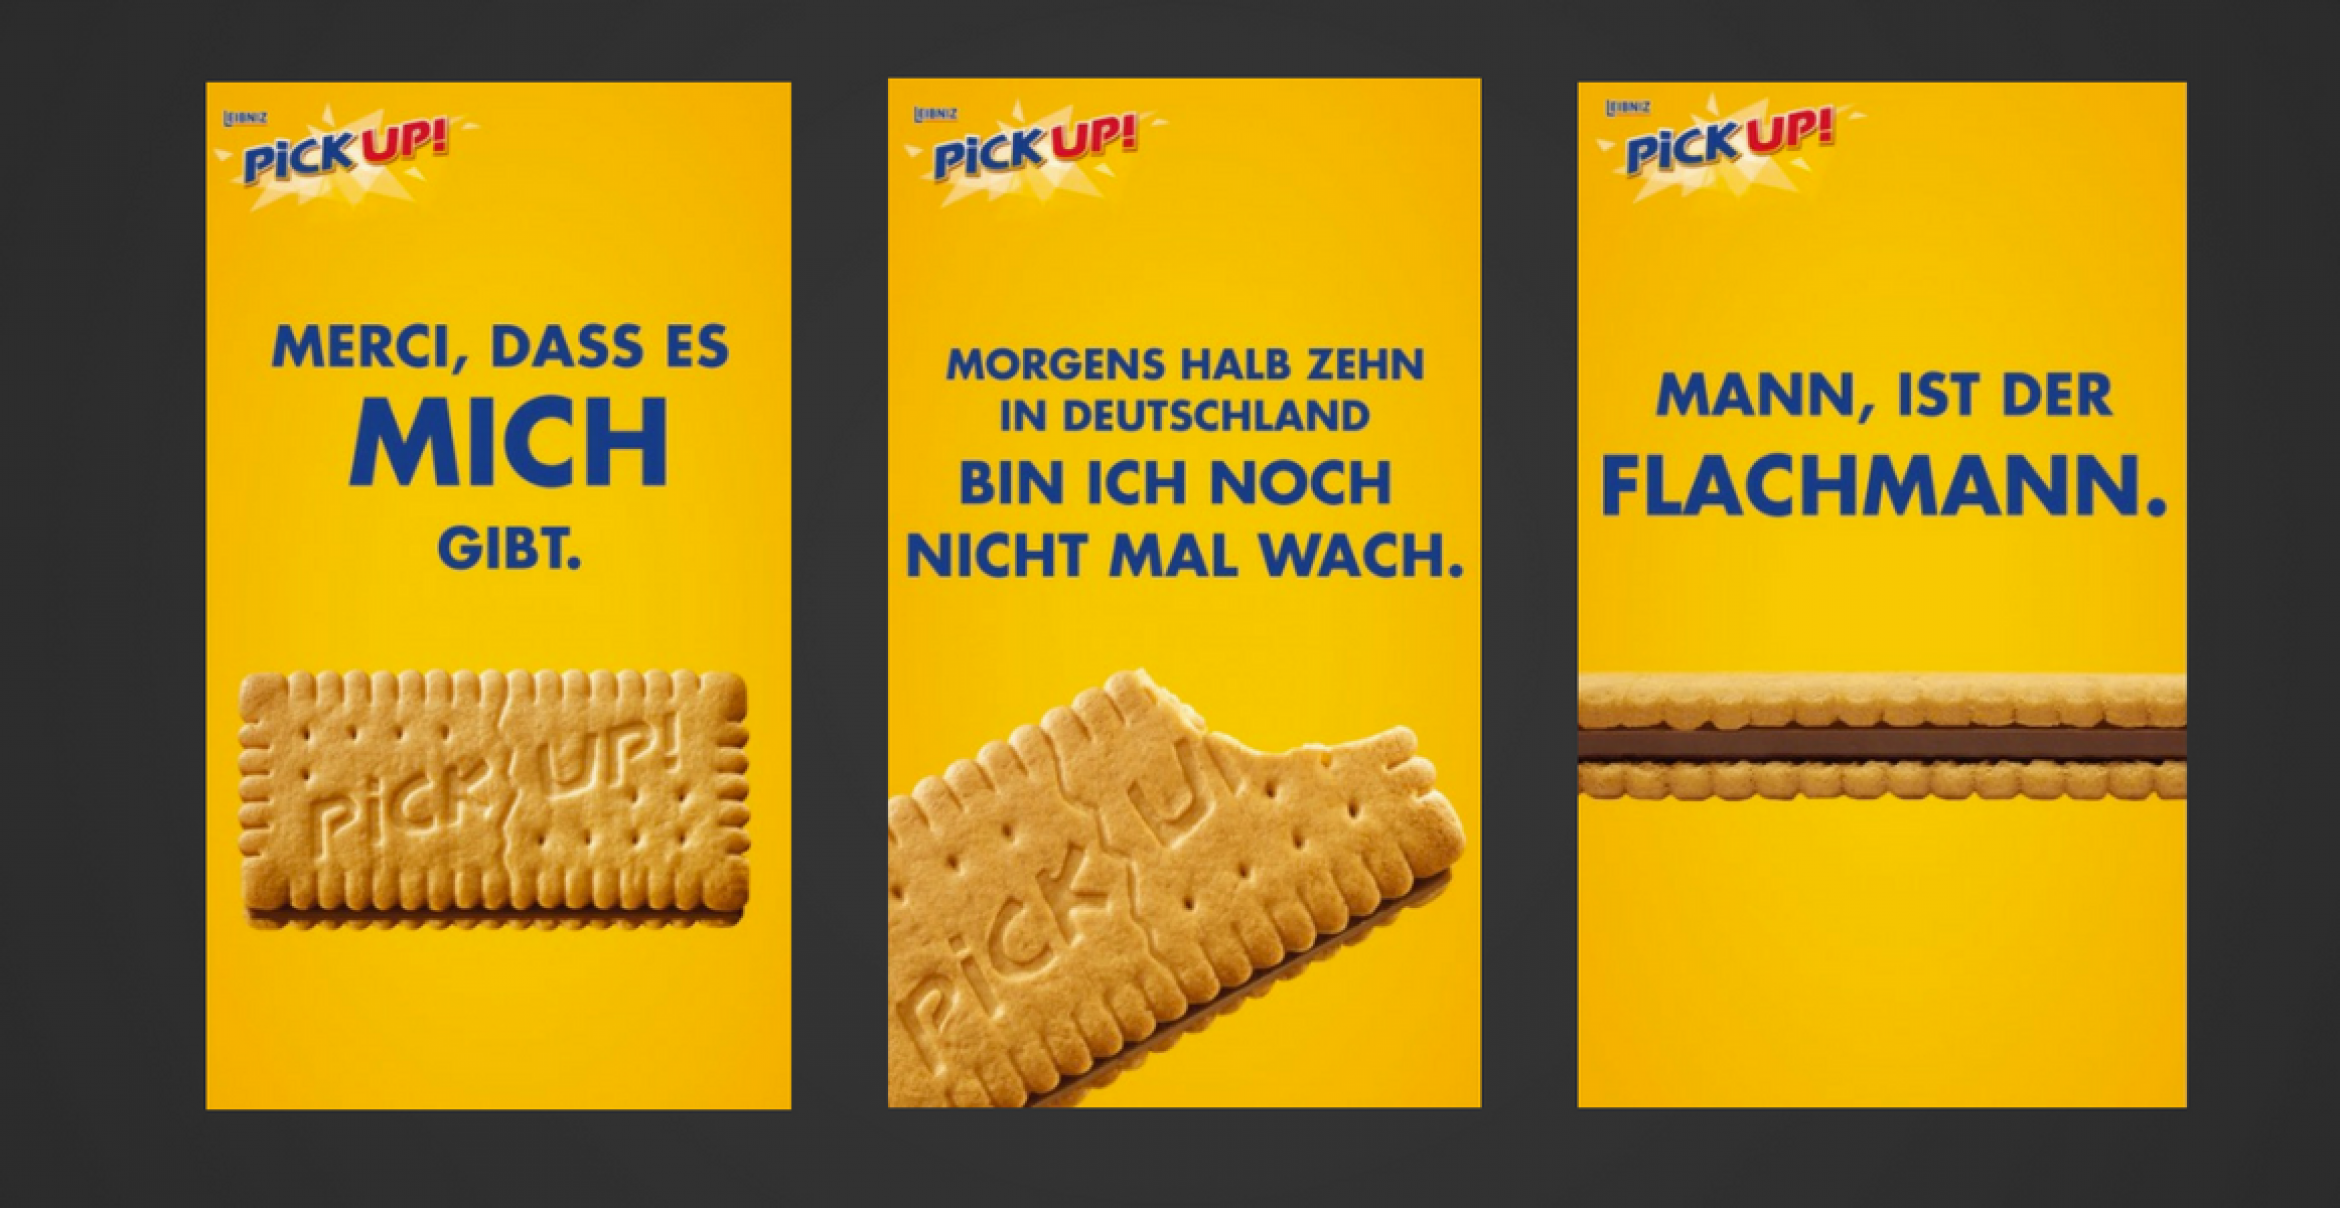 “Mann, ist der Flachmann“: PiCK UP! parodiert mit Guerilla-Kampagne legendäre Werbeslogans